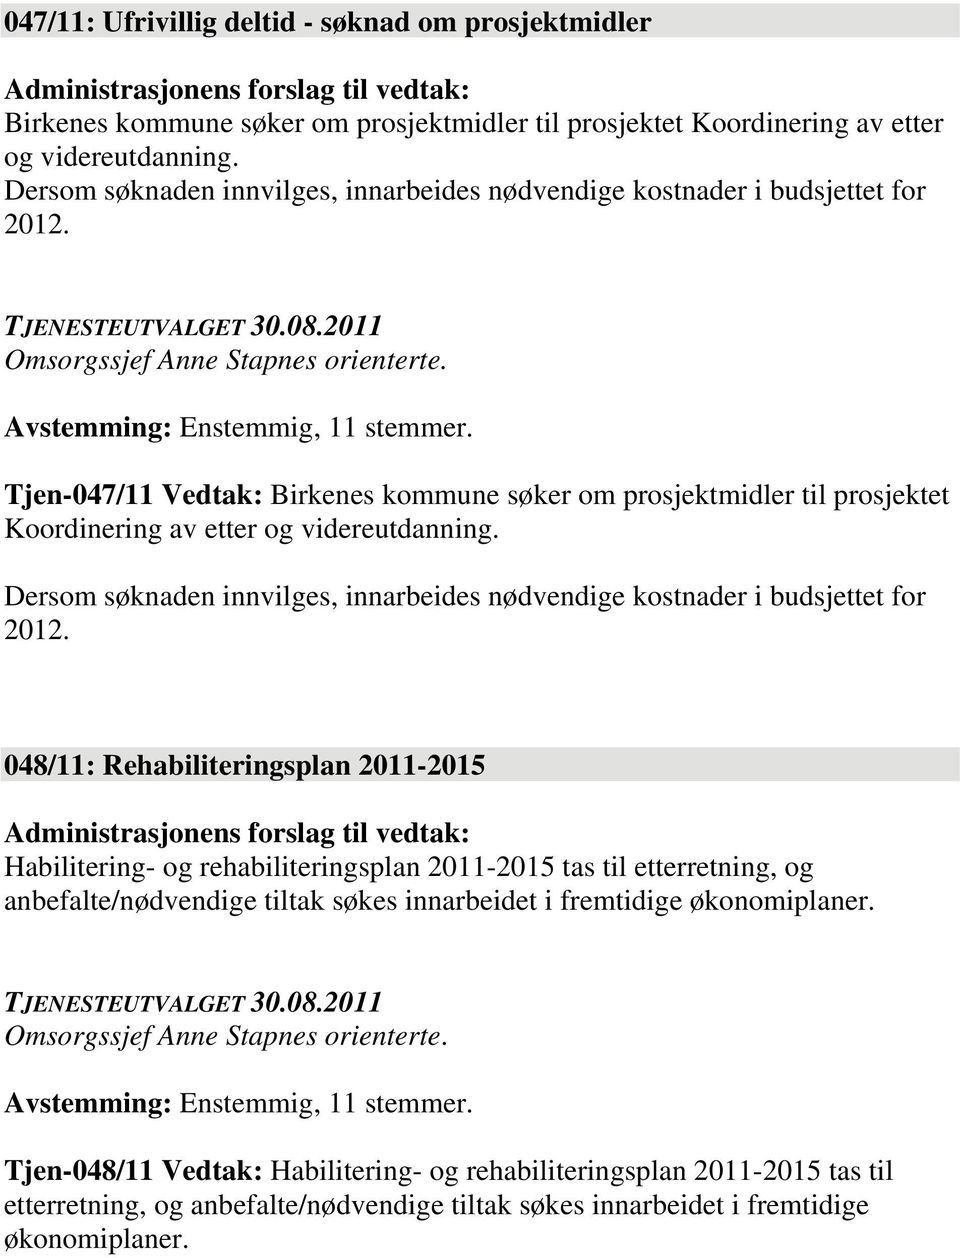 Tjen-047/11 Vedtak: Birkenes kommune søker om prosjektmidler til prosjektet Koordinering av etter og videreutdanning. Dersom søknaden innvilges, innarbeides nødvendige kostnader i budsjettet for 2012.